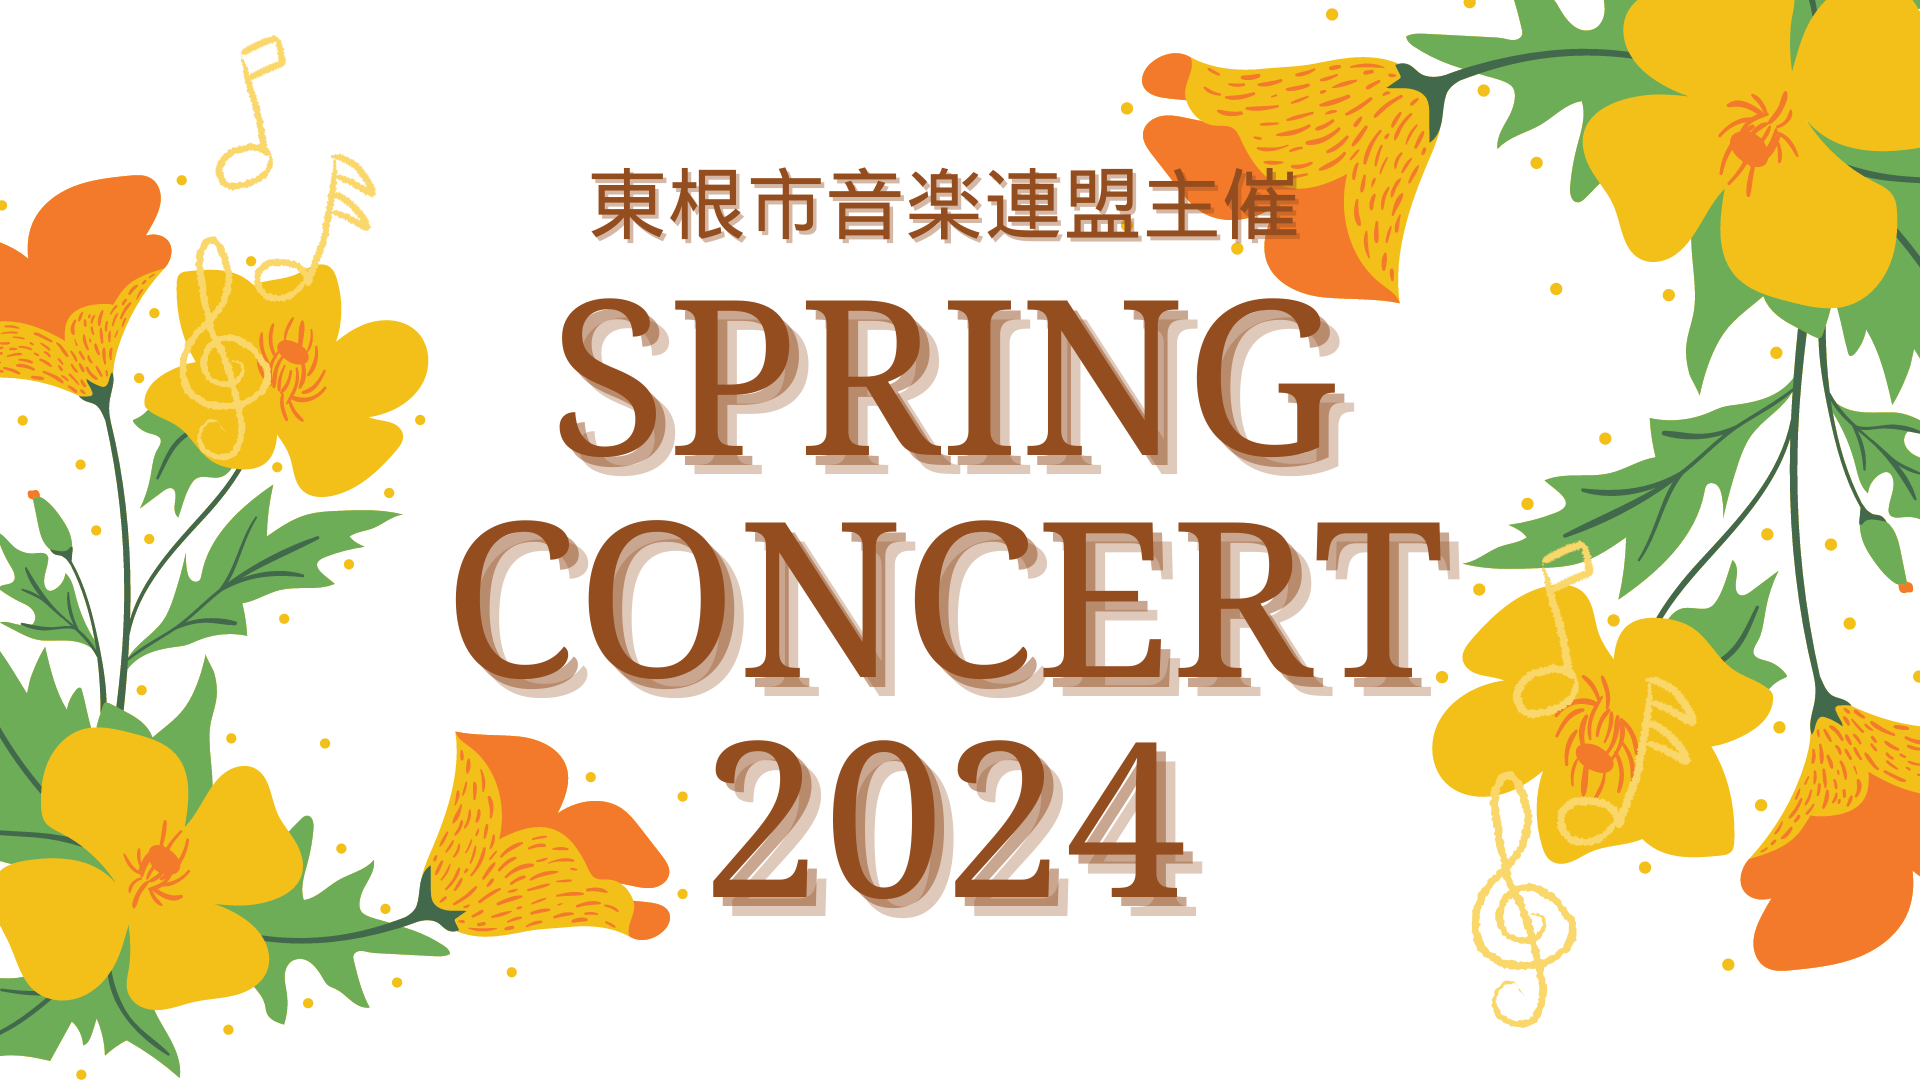 東根市音楽連盟 Spring Concert 2024イメージ